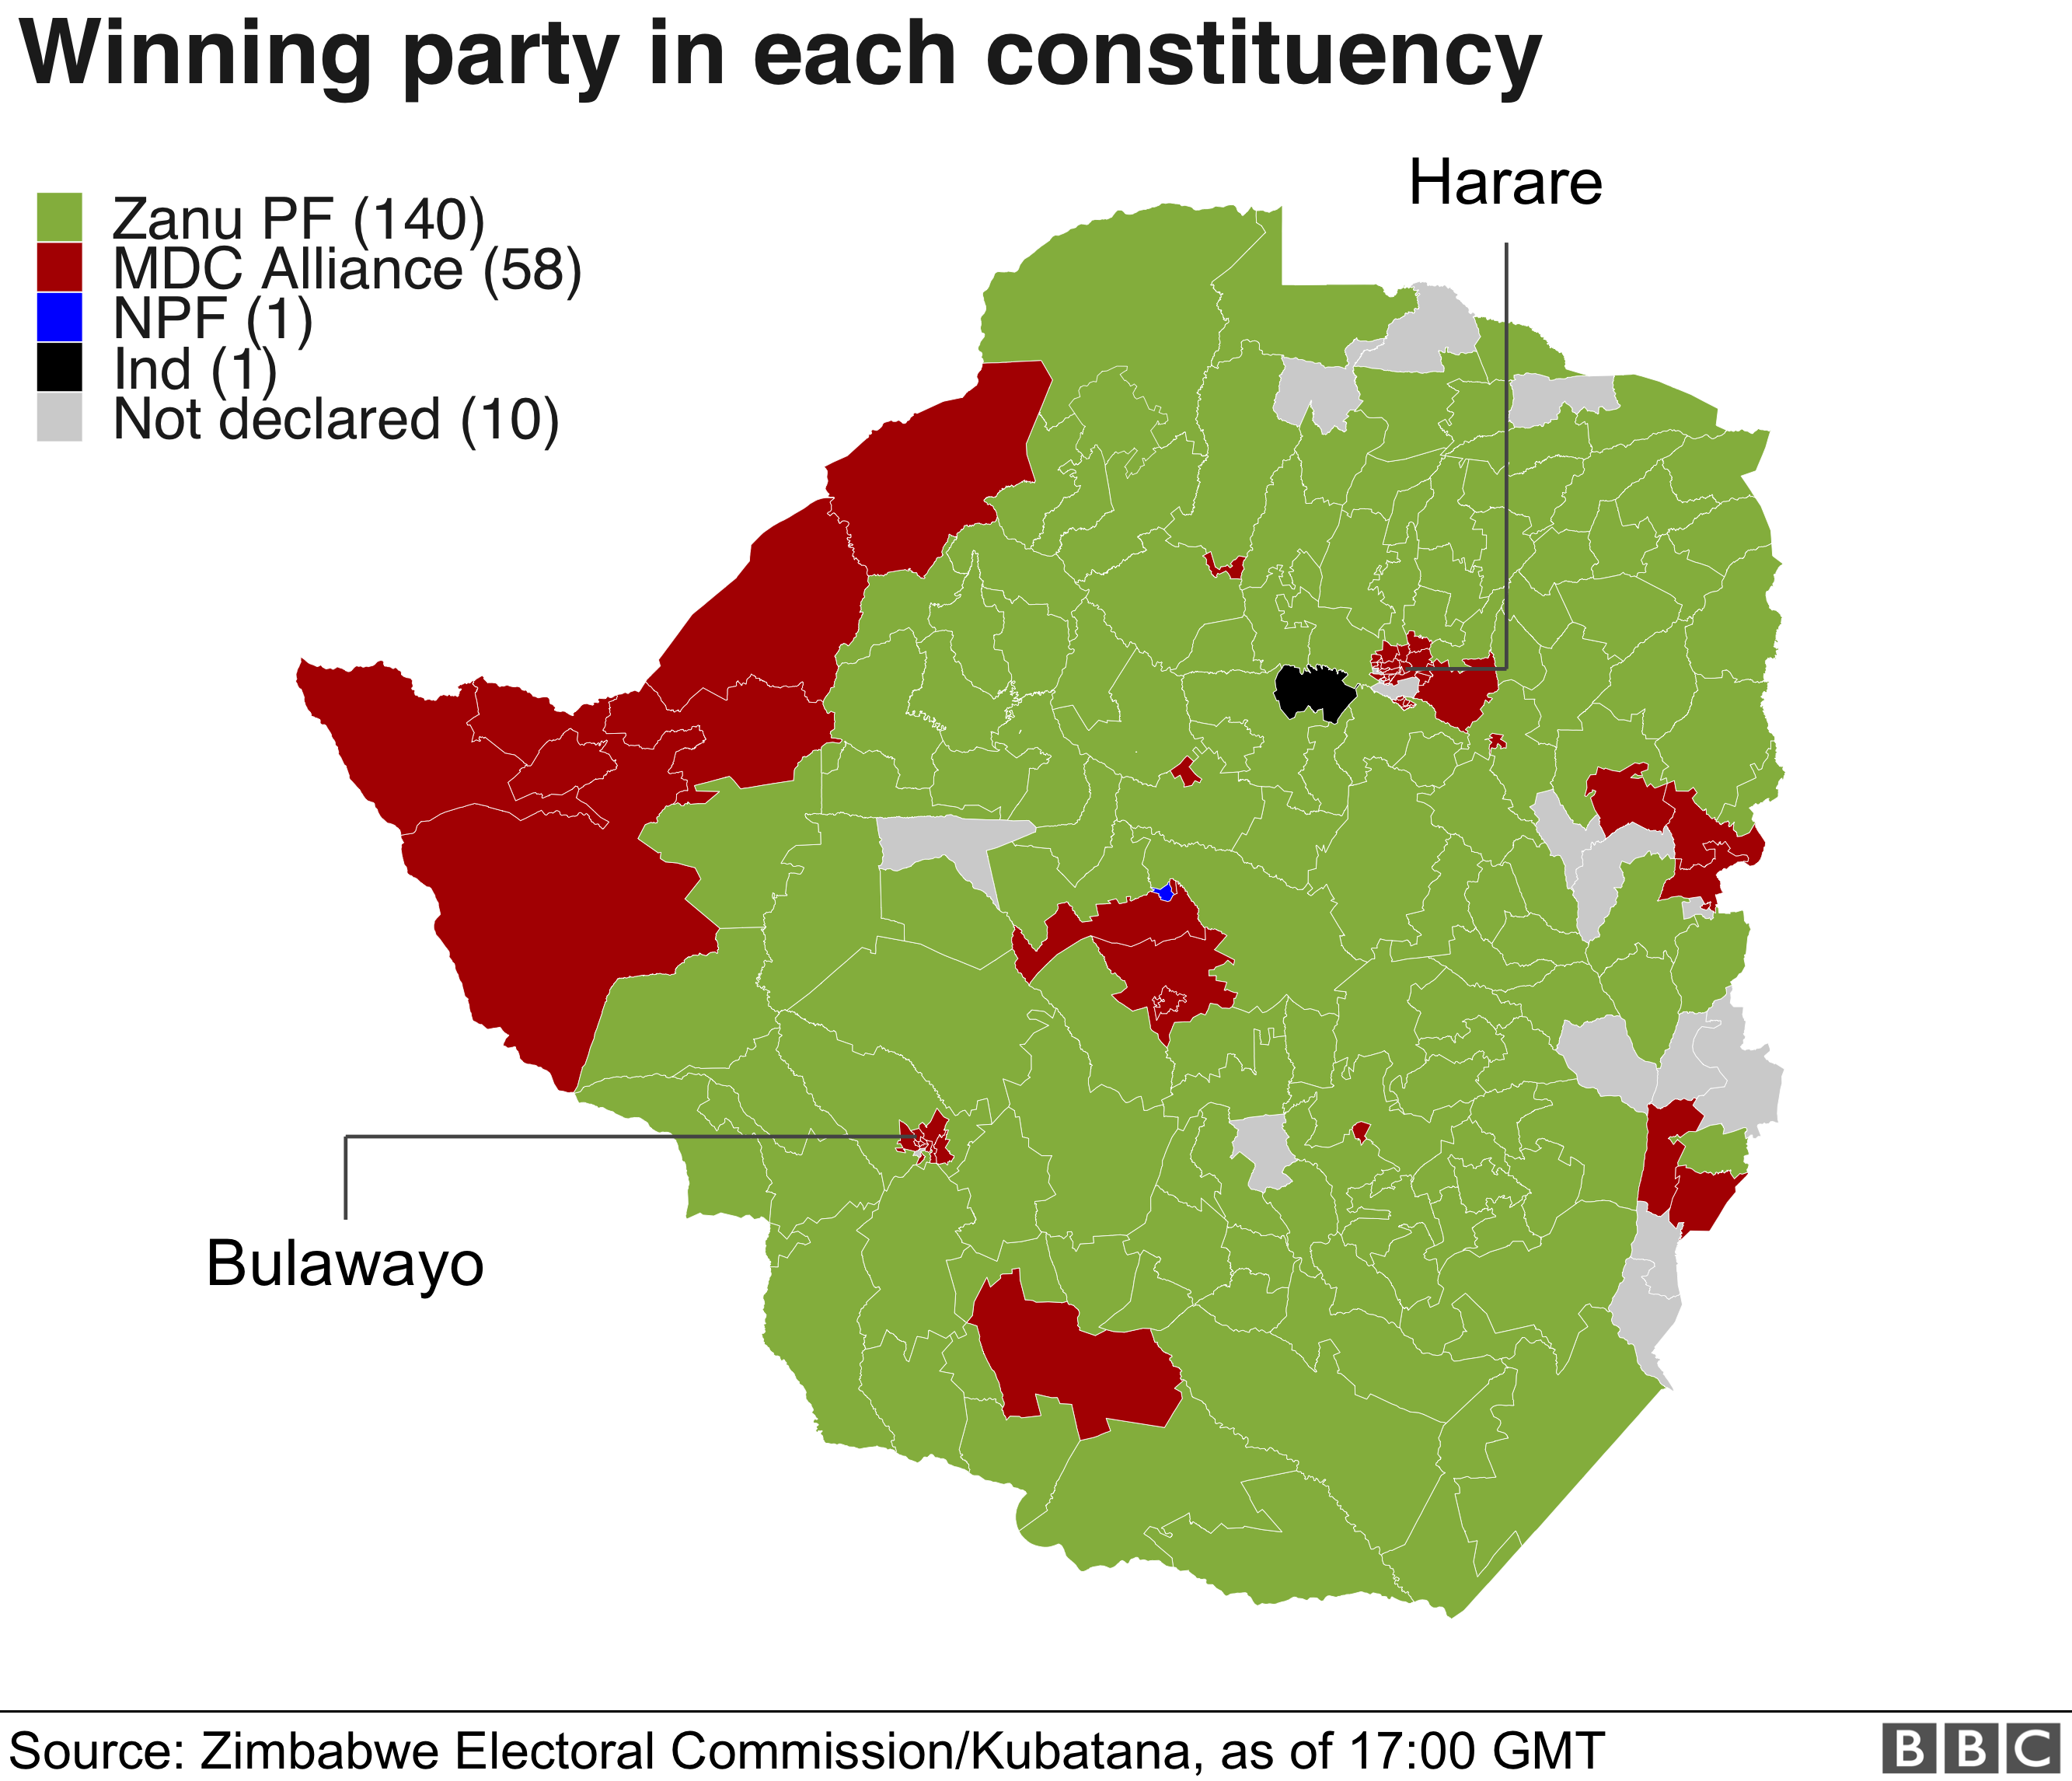 Карта результатов выборов. MDC победил в городах, но Zanu PF доминировал в сельской местности